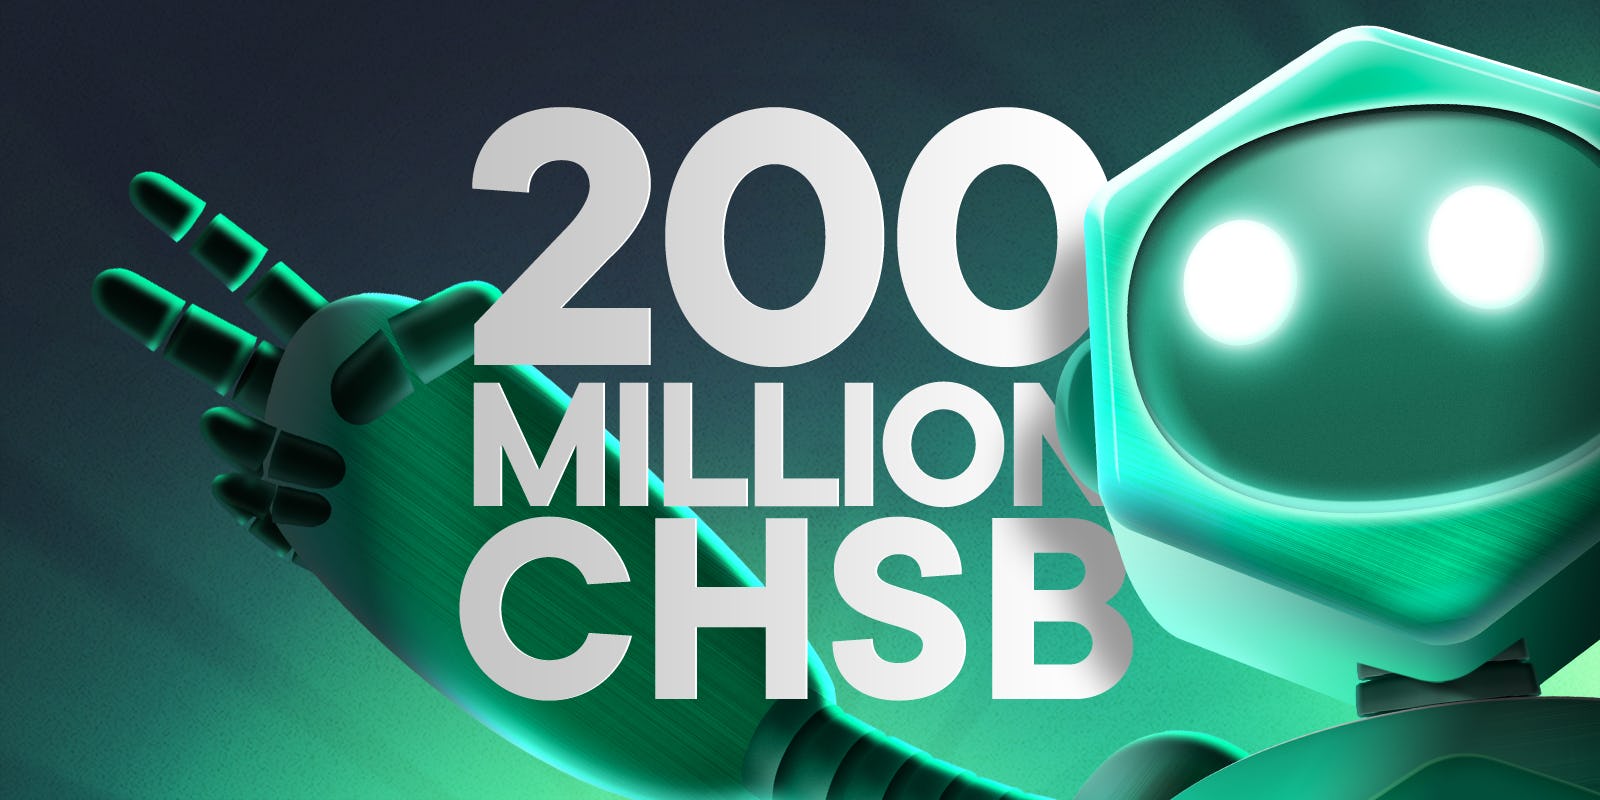 200 Million CHSB